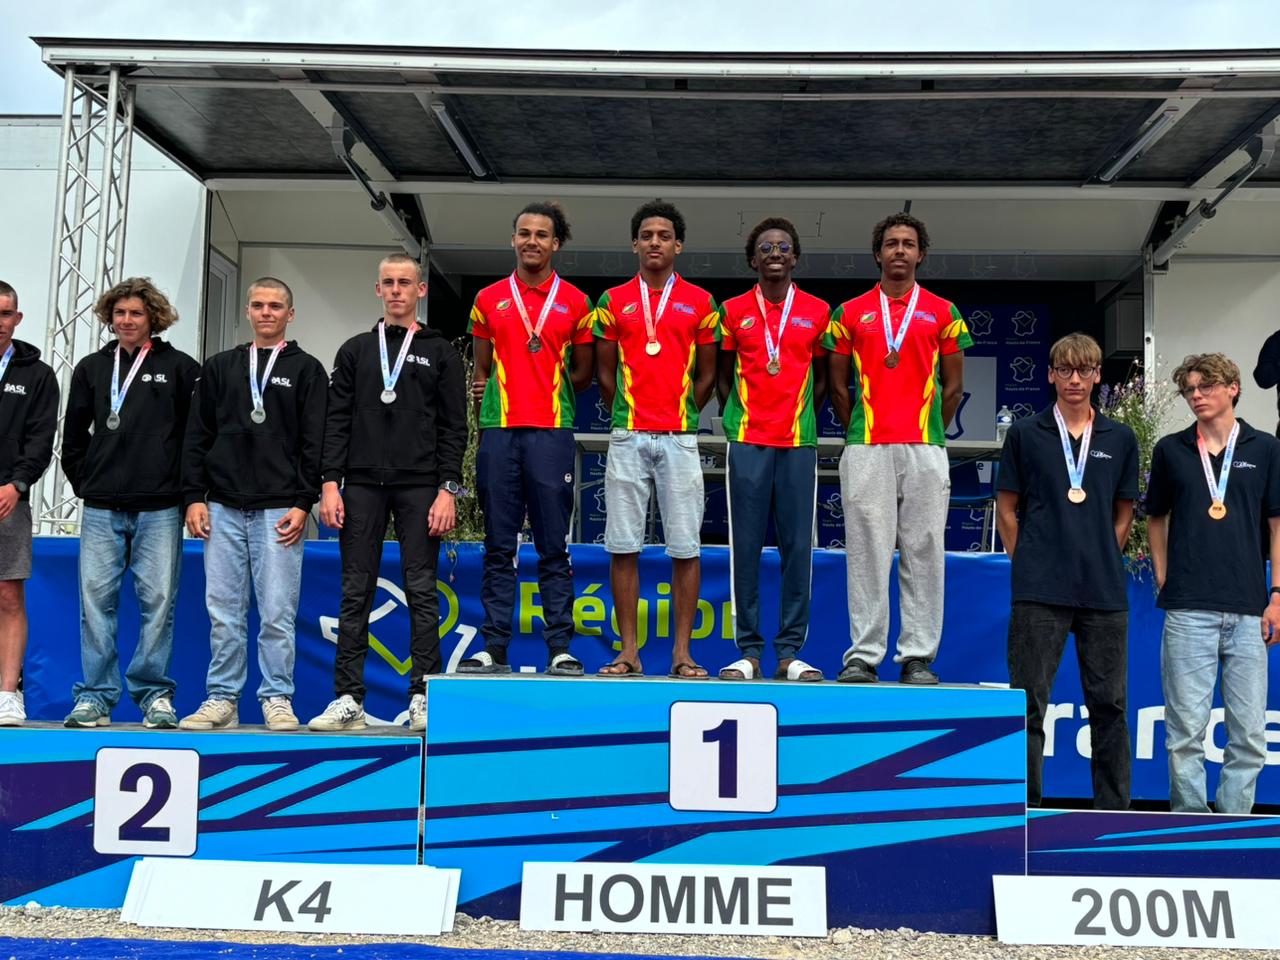     CANOË-KAYAK. Quatre jeunes Guadeloupéens médaillés d’or aux championnats de France

